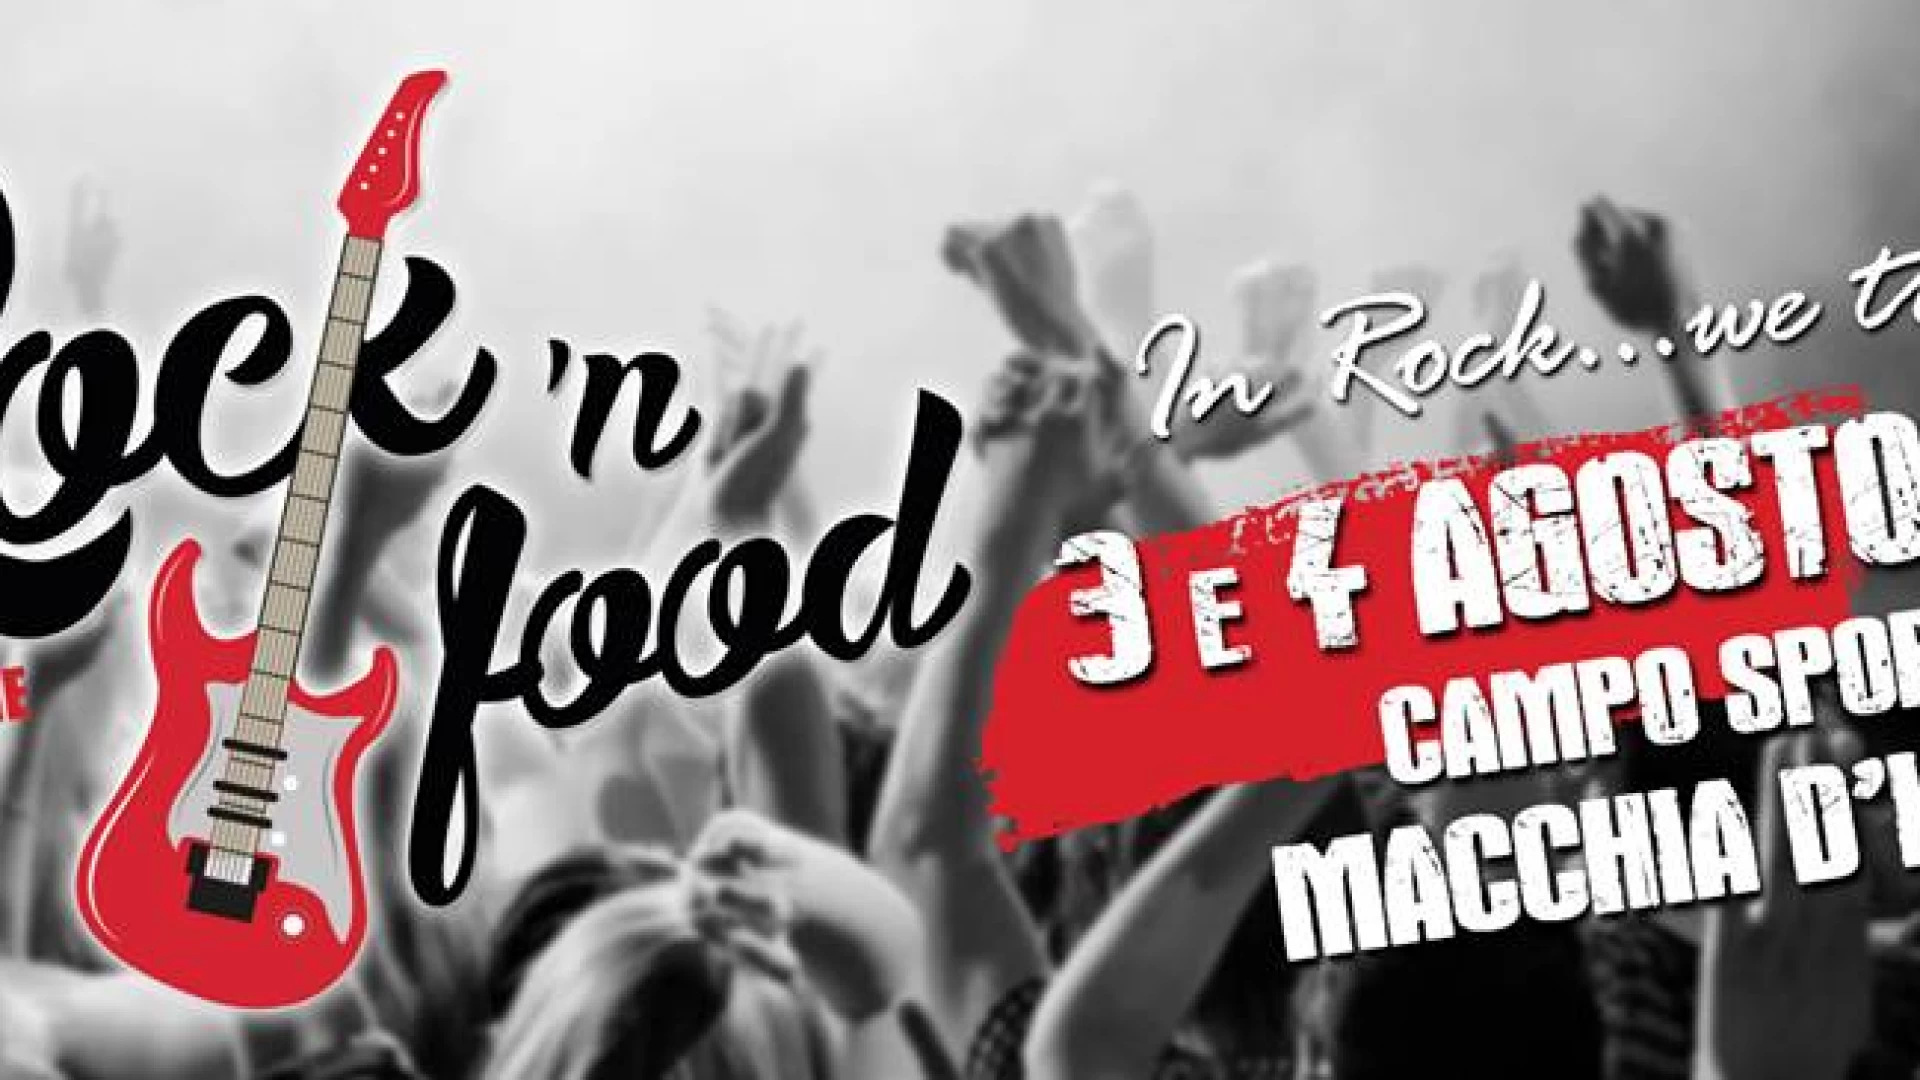 Macchia d’Isernia: questa sera la seconda edizione del Rock ‘n food. Evento promosso da Comune e Pro Loco.